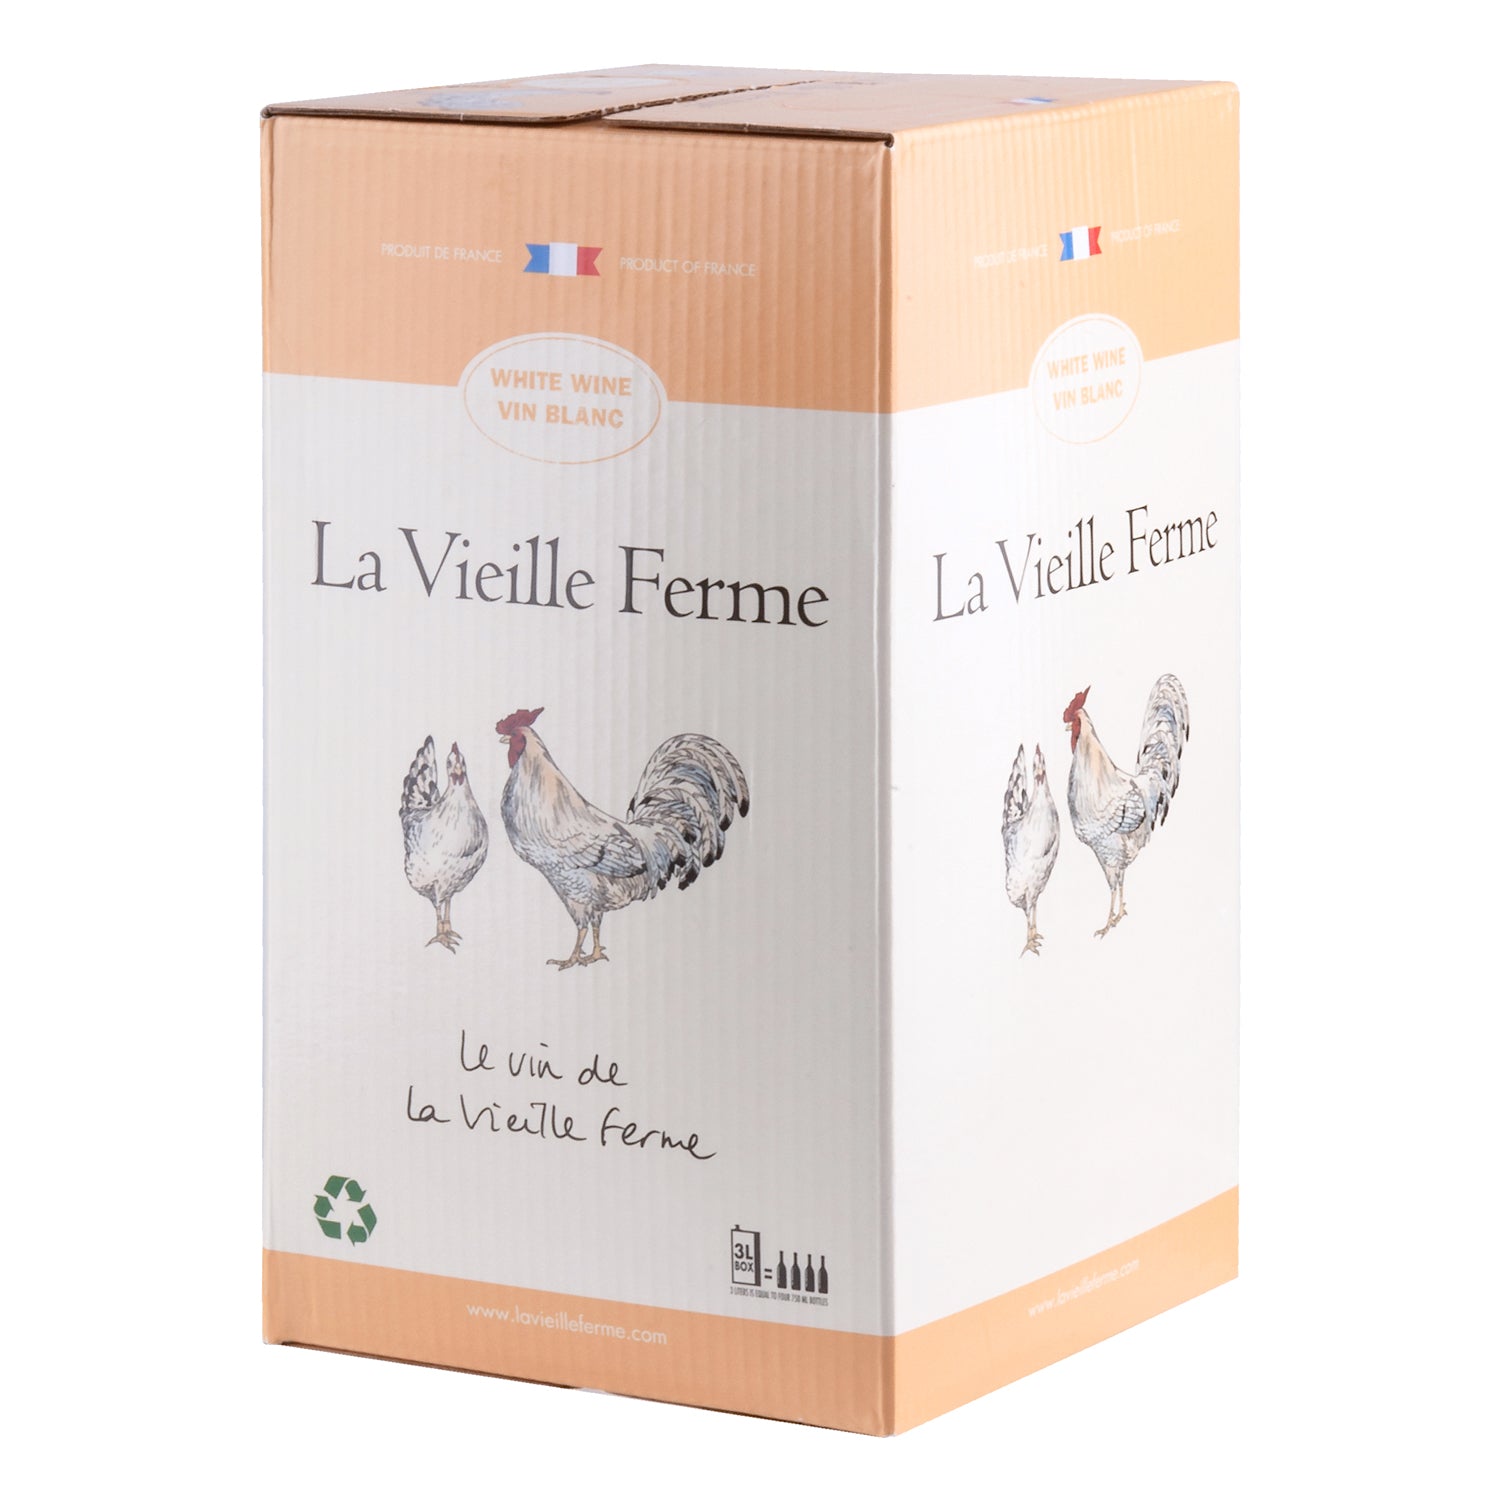 La Vieille Ferme Blanc Bag in Box [3000ml]